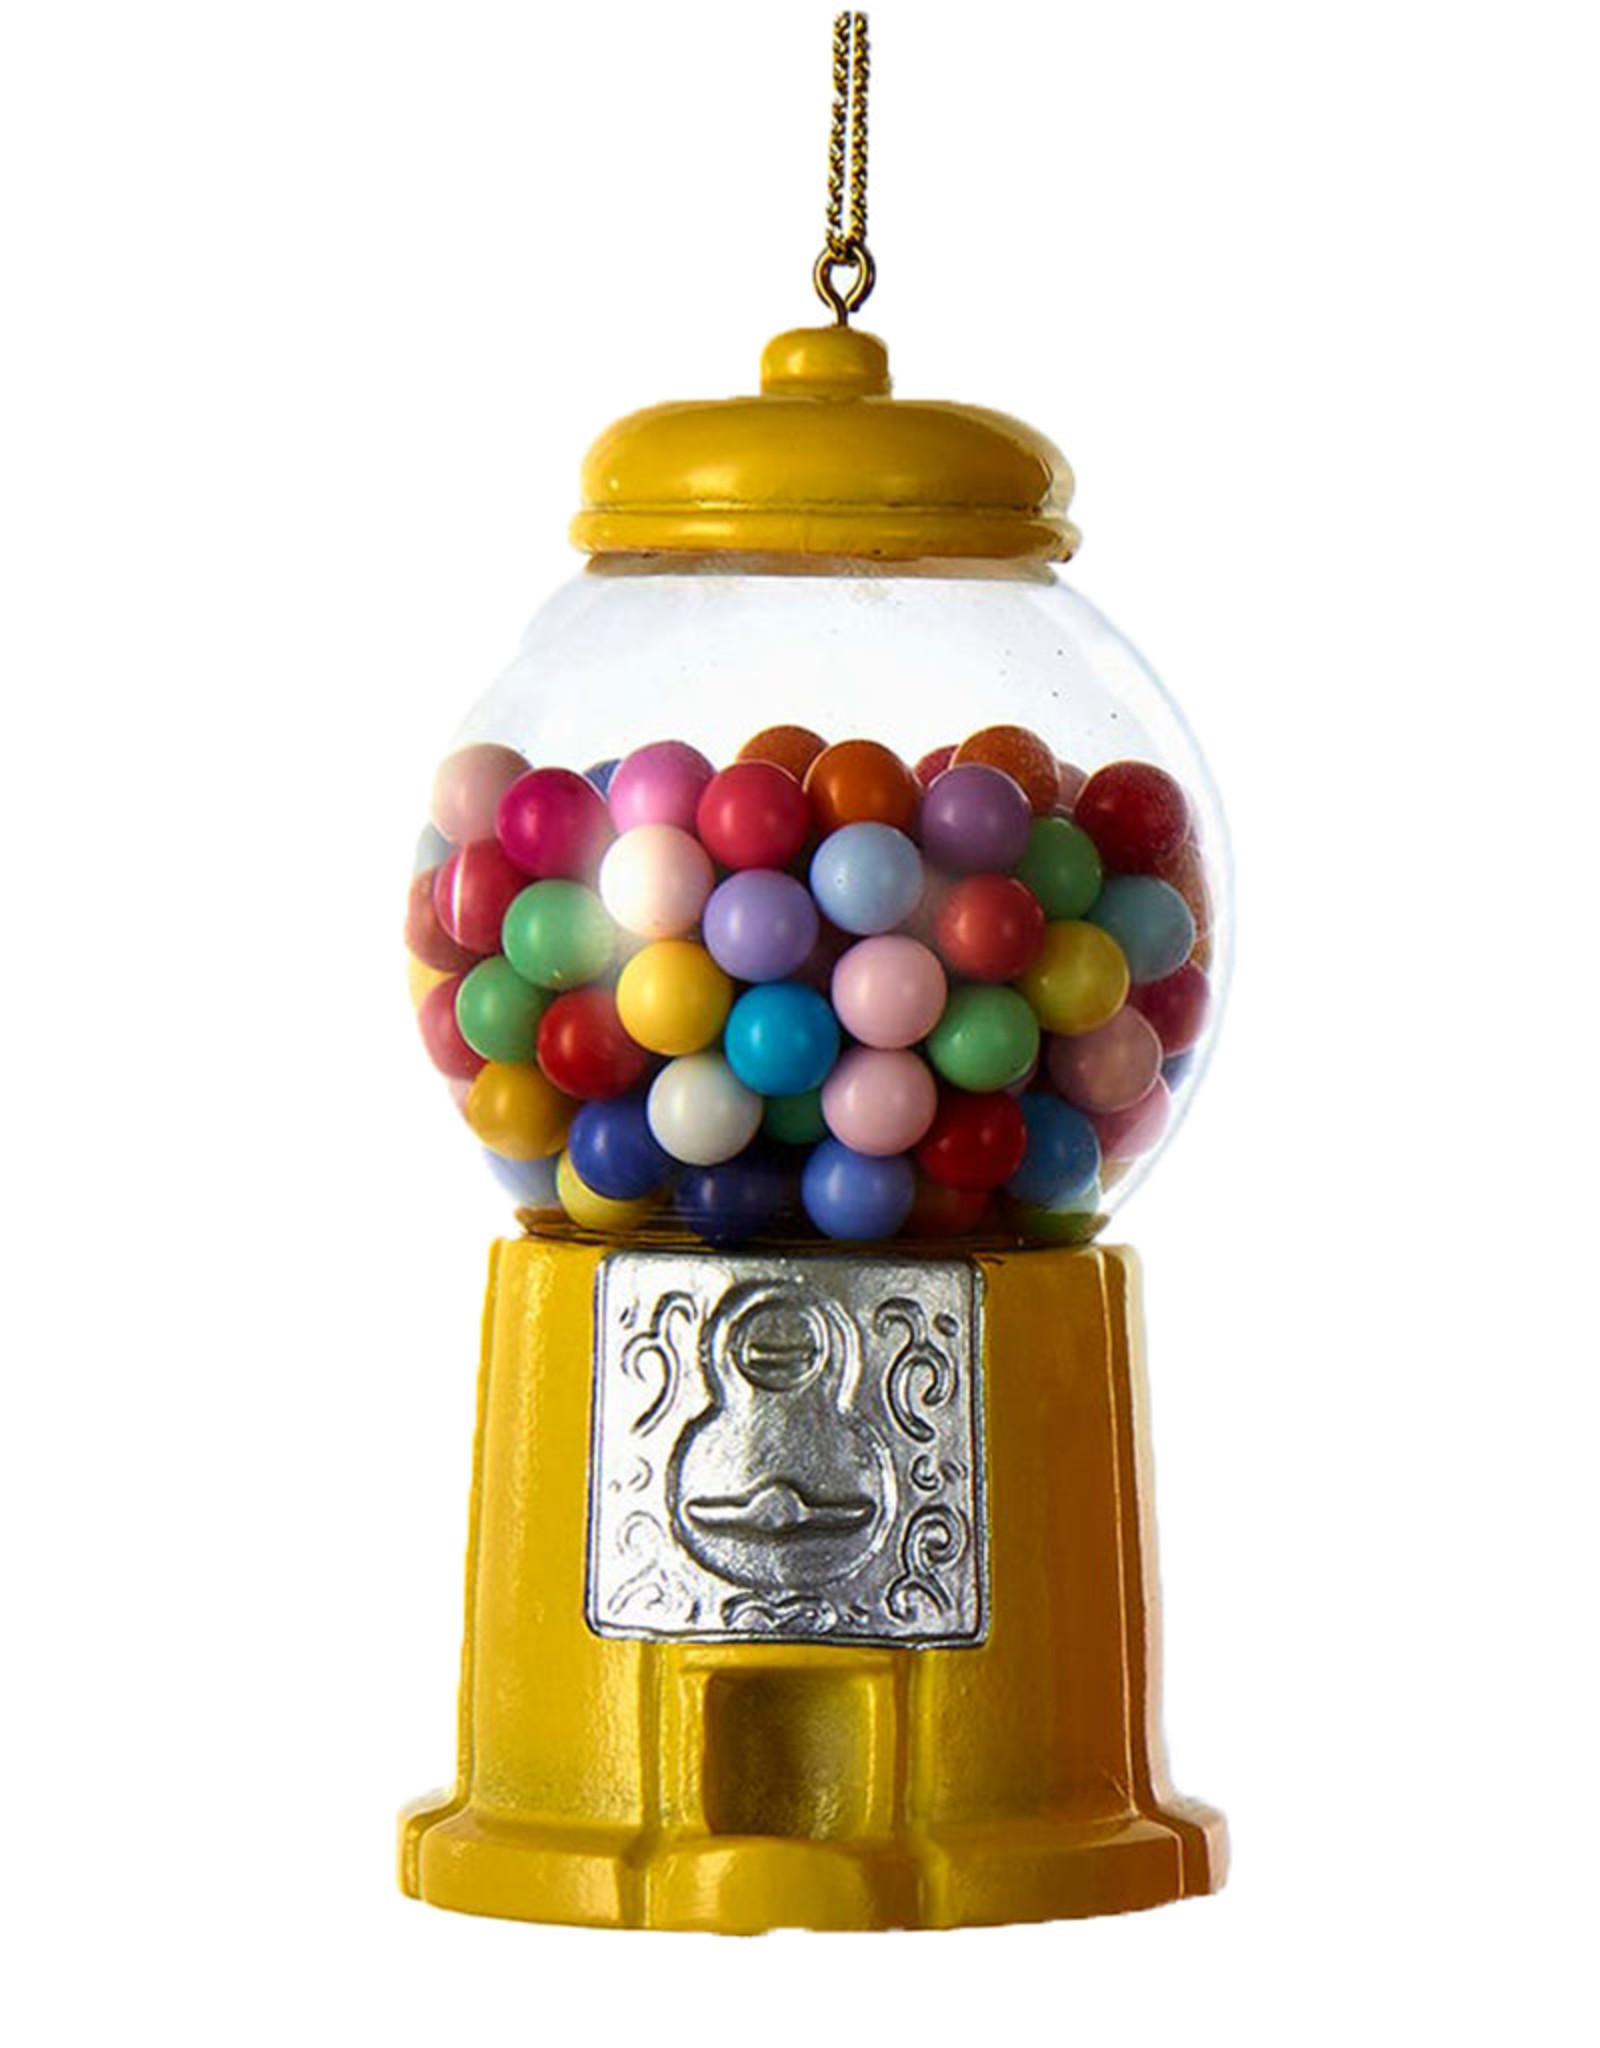 Kurt Adler Gumball Machine Ornament In Yellow